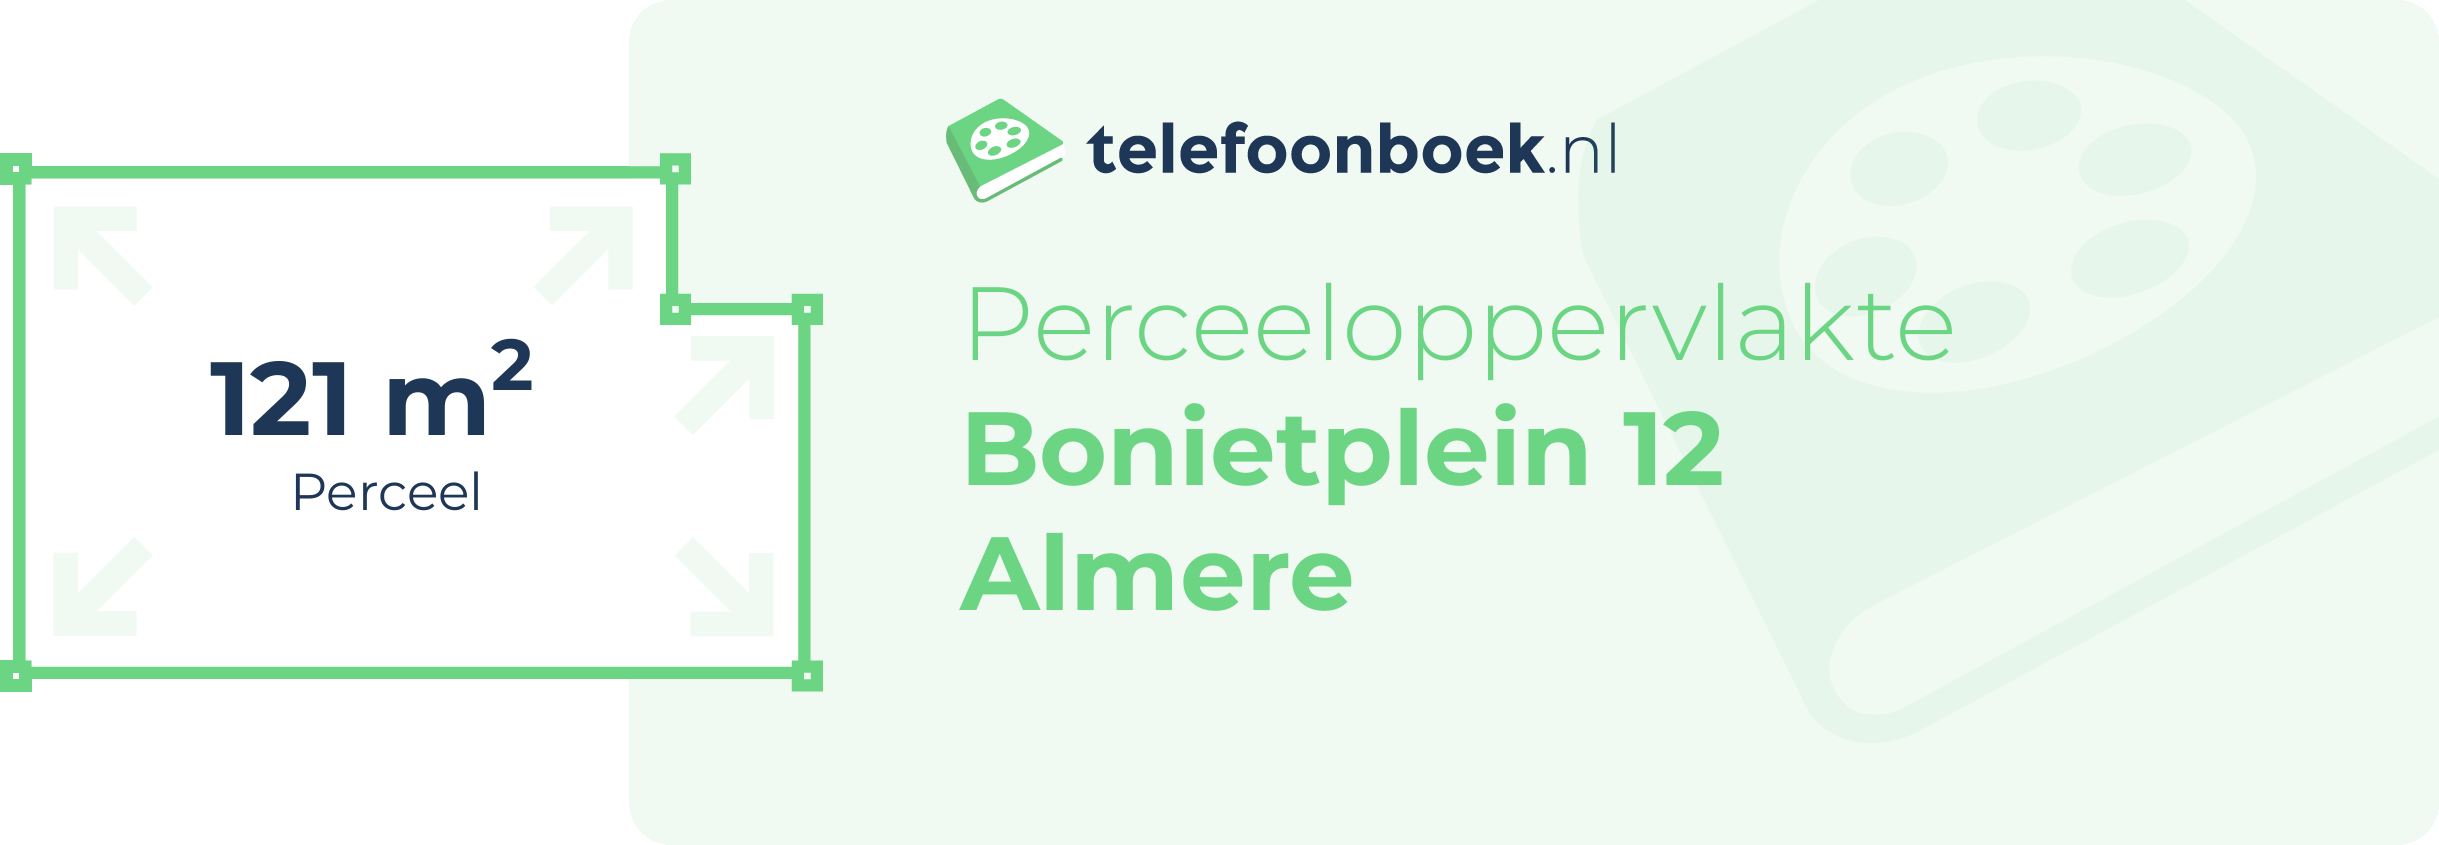 Perceeloppervlakte Bonietplein 12 Almere